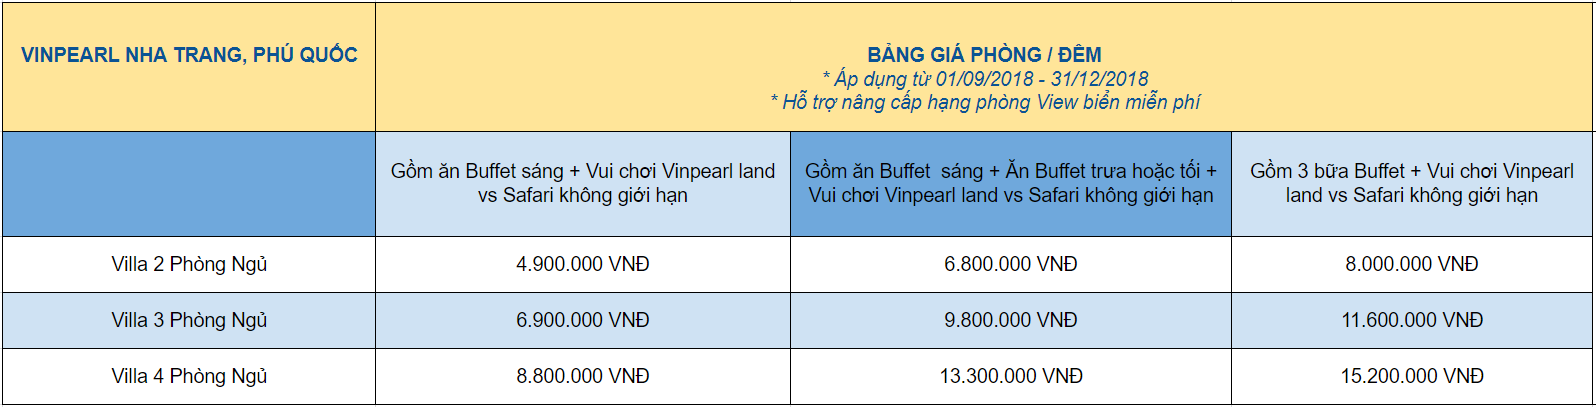 Chương trình khuyến mại nghỉ dưỡng vinpearl với voucher villa plomotion